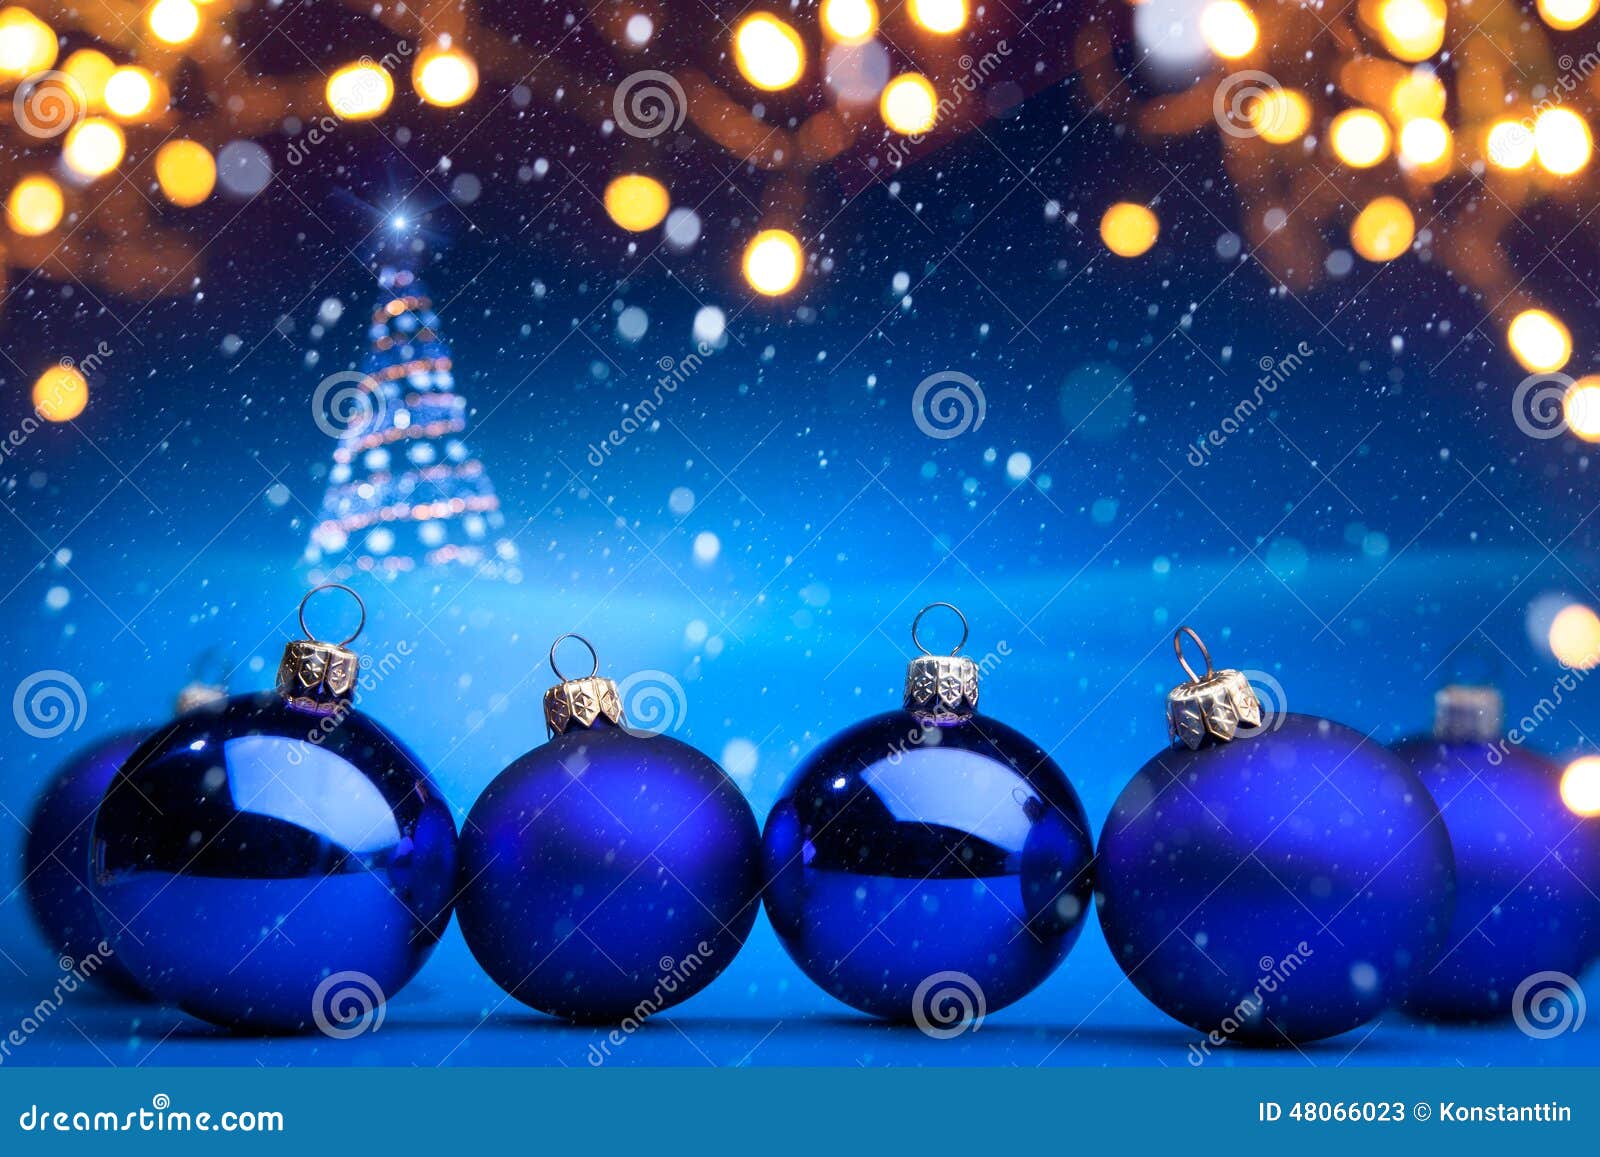 Christmas tree light stock image. Image of happy, xmas - 48066023